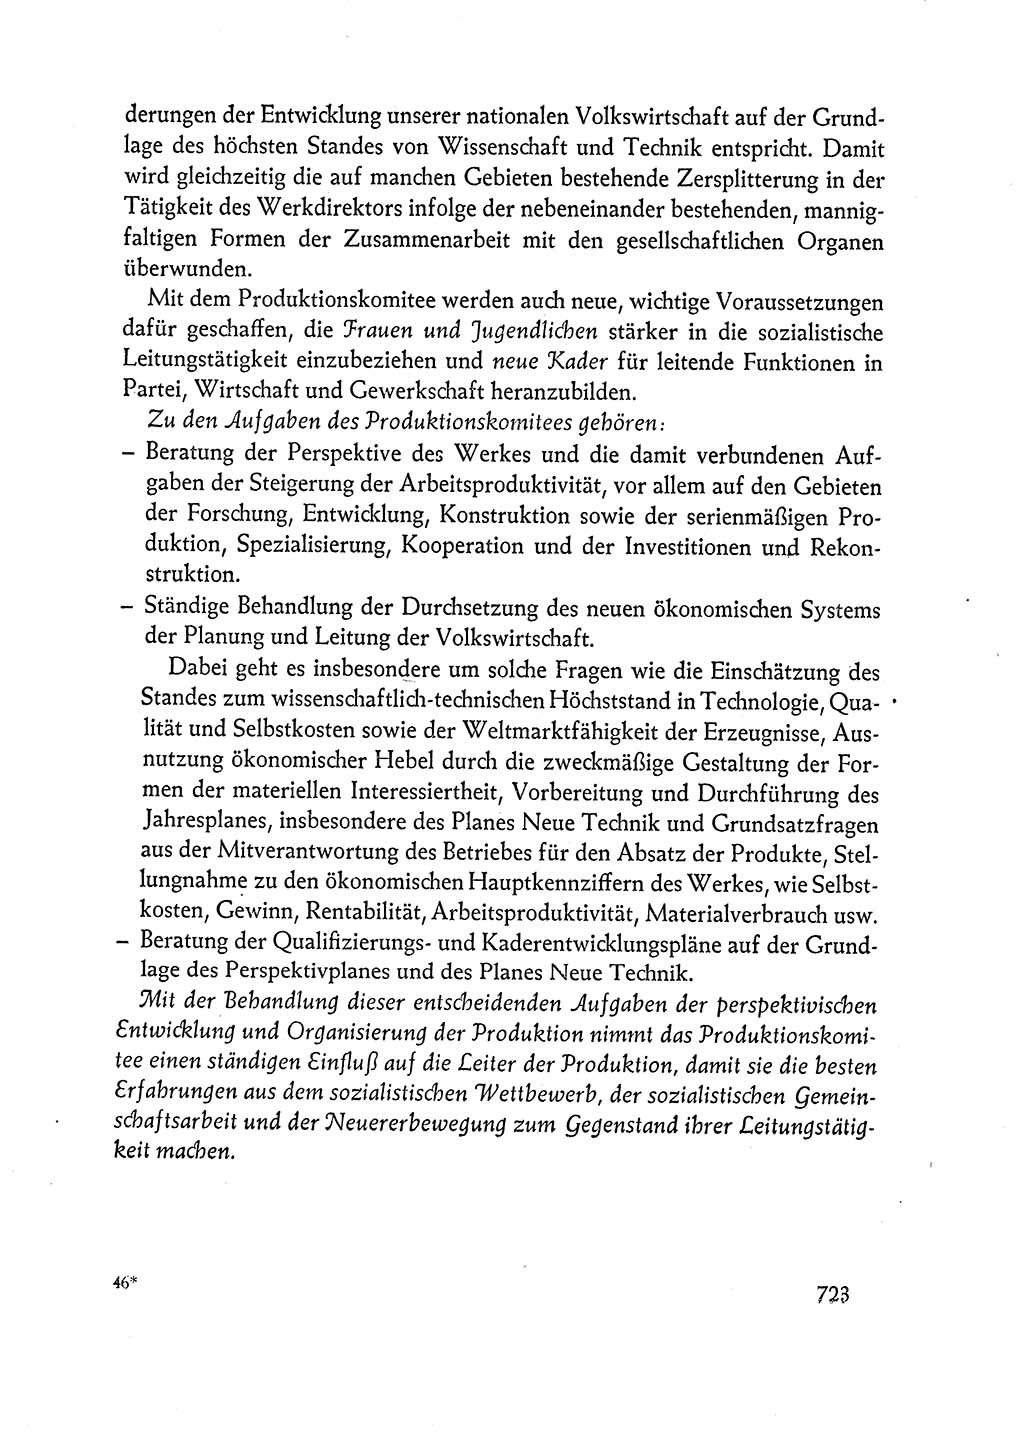 Dokumente der Sozialistischen Einheitspartei Deutschlands (SED) [Deutsche Demokratische Republik (DDR)] 1962-1963, Seite 723 (Dok. SED DDR 1962-1963, S. 723)